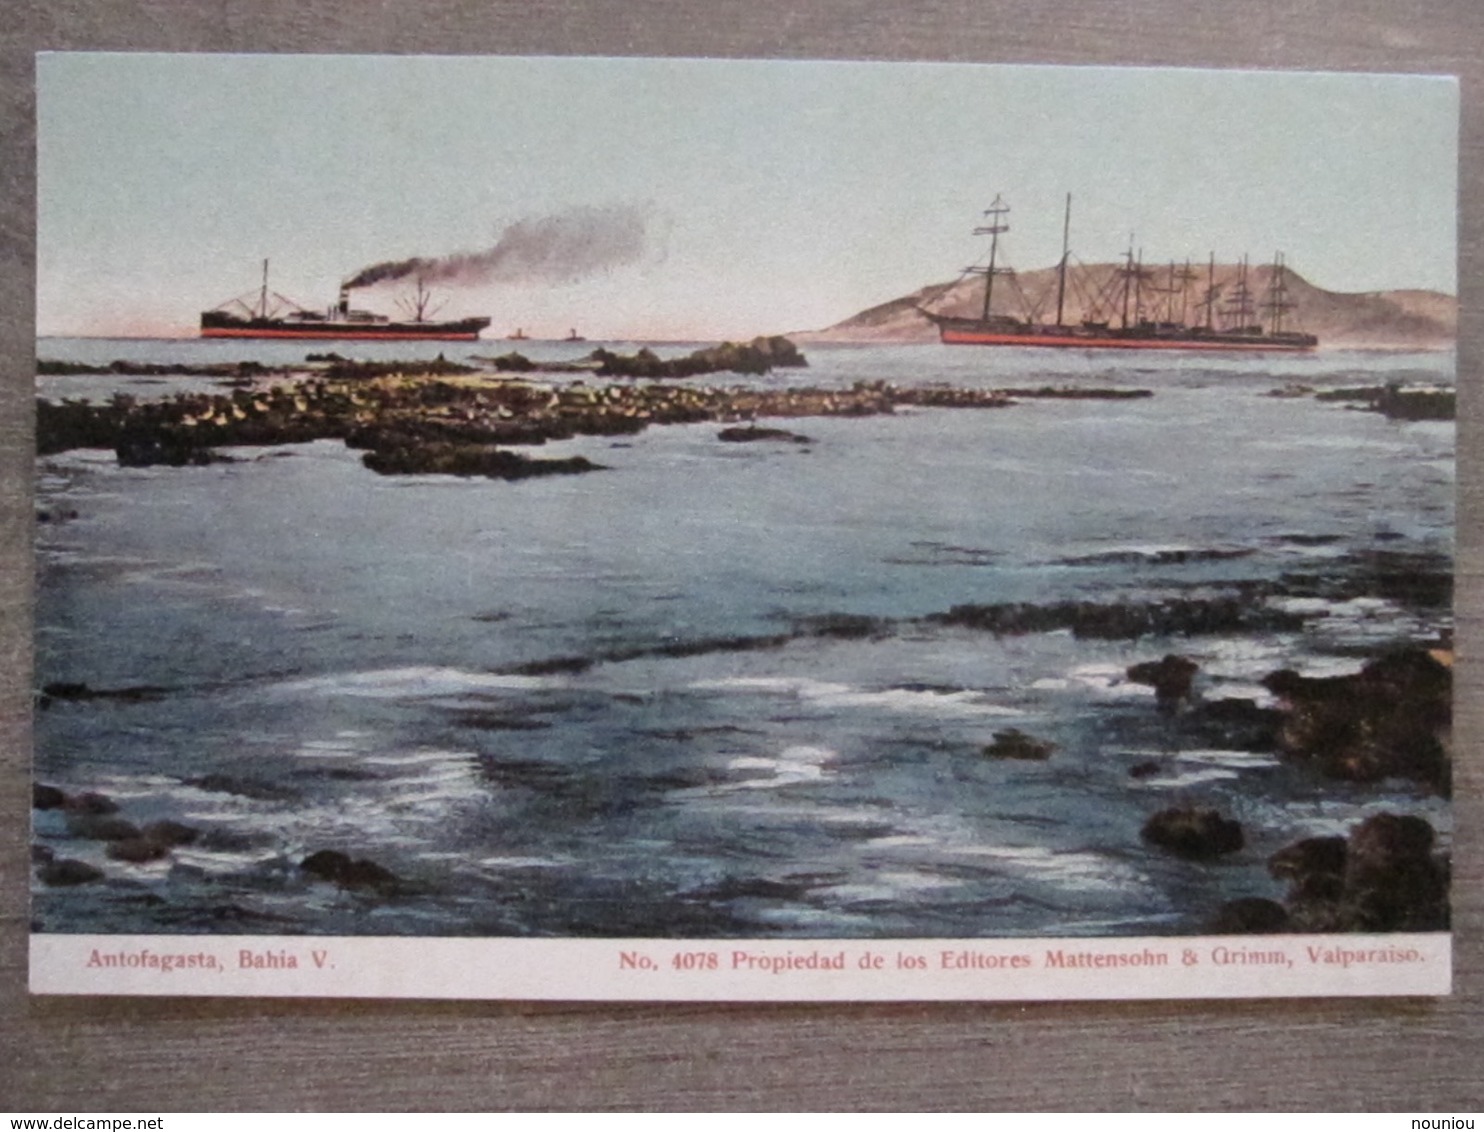 Tarjeta Postal - Chile Chili - Antofagasta - Bahia V - Boats - 4078 Mattensohn & Grimm - Valparaiso - Chili